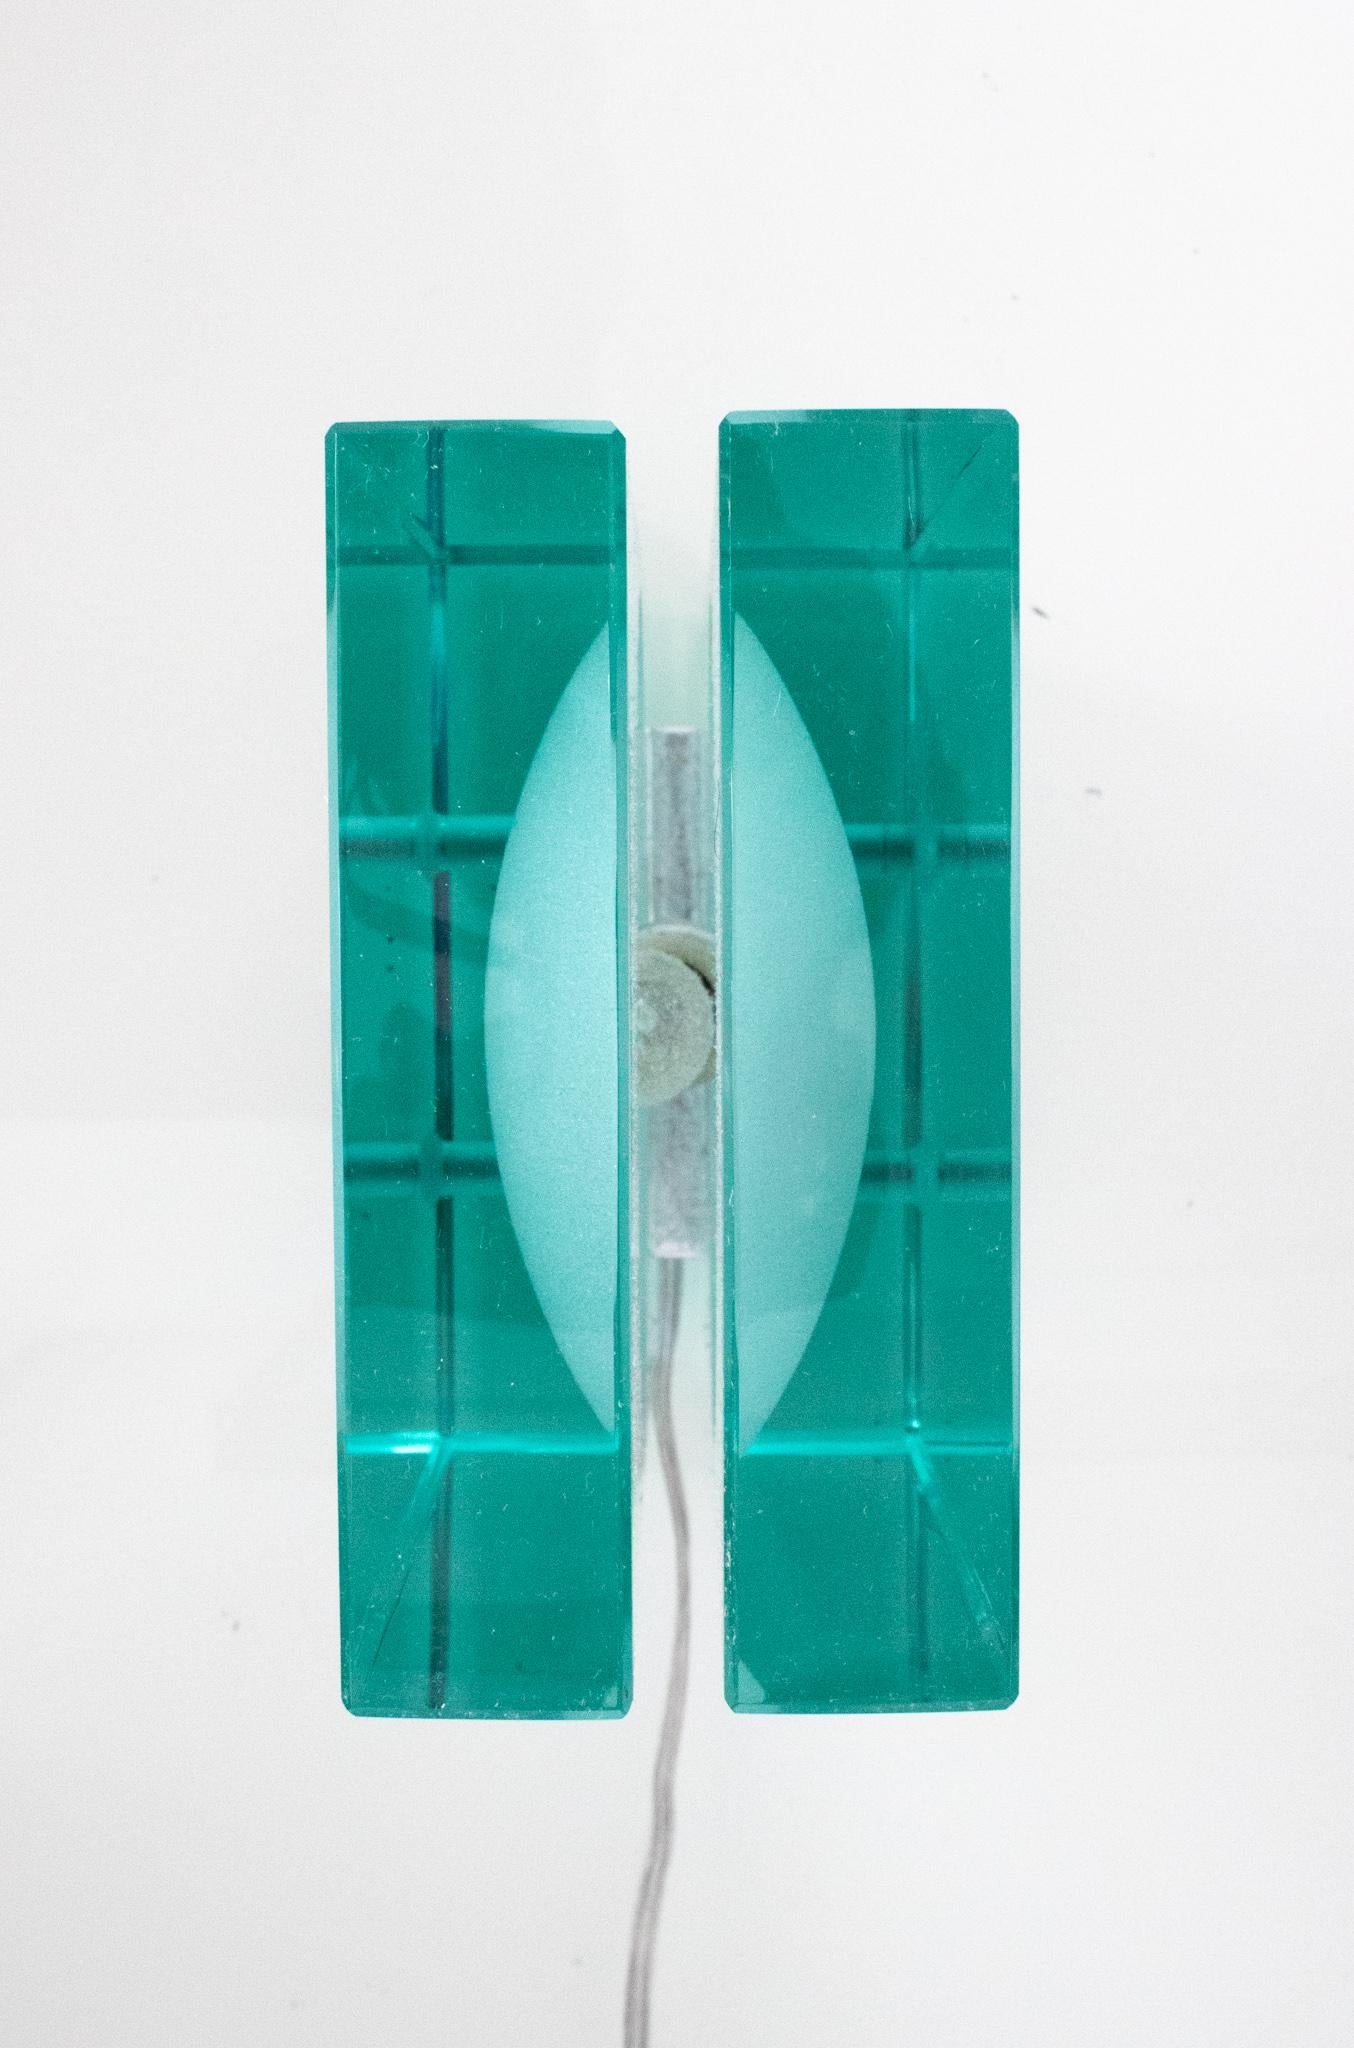 Lampe de table géométrique conçue par Fontana Arte.

Une pièce extraordinaire des arts décoratifs italiens, créée à Milan par Fontana Arte dans les années 1960. Fabriqué en verre taillé translucide et en acier nickelé. Le corps principal est composé